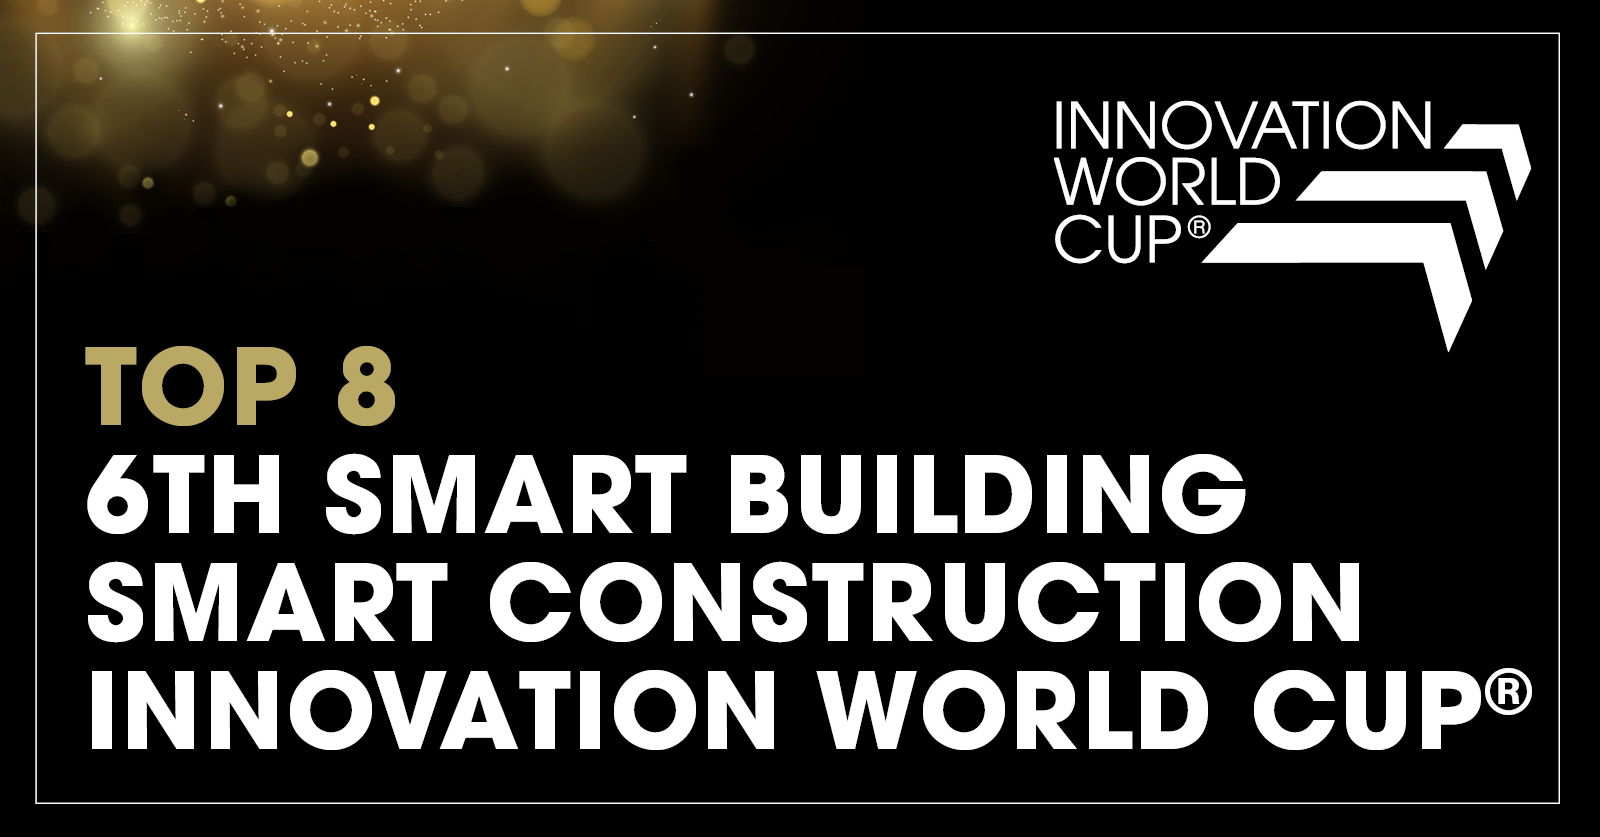 뮌헨에서 열린 2023 Innovation World Cup©에서 유럽 HVAC 전문업체 Hysopt는 세계 최고의 스마트 빌딩 및 스마트 건설 혁신가 중 하나로 인정받았습니다.